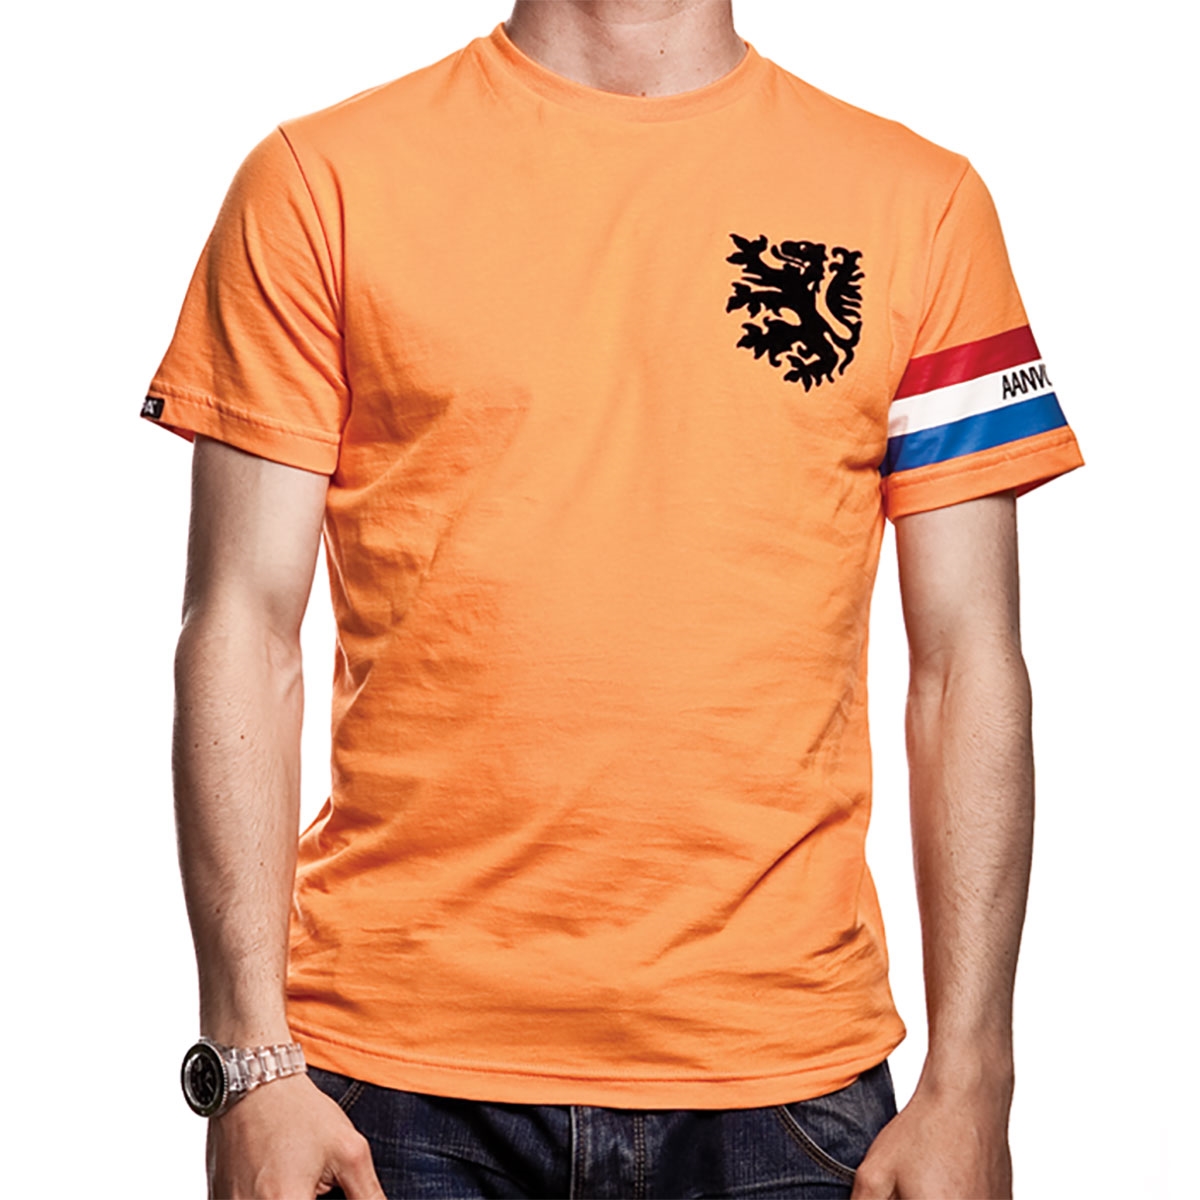 Goedkoop Oranje/Nederlands Elftal of t-shirt - Voetbalshirts.com